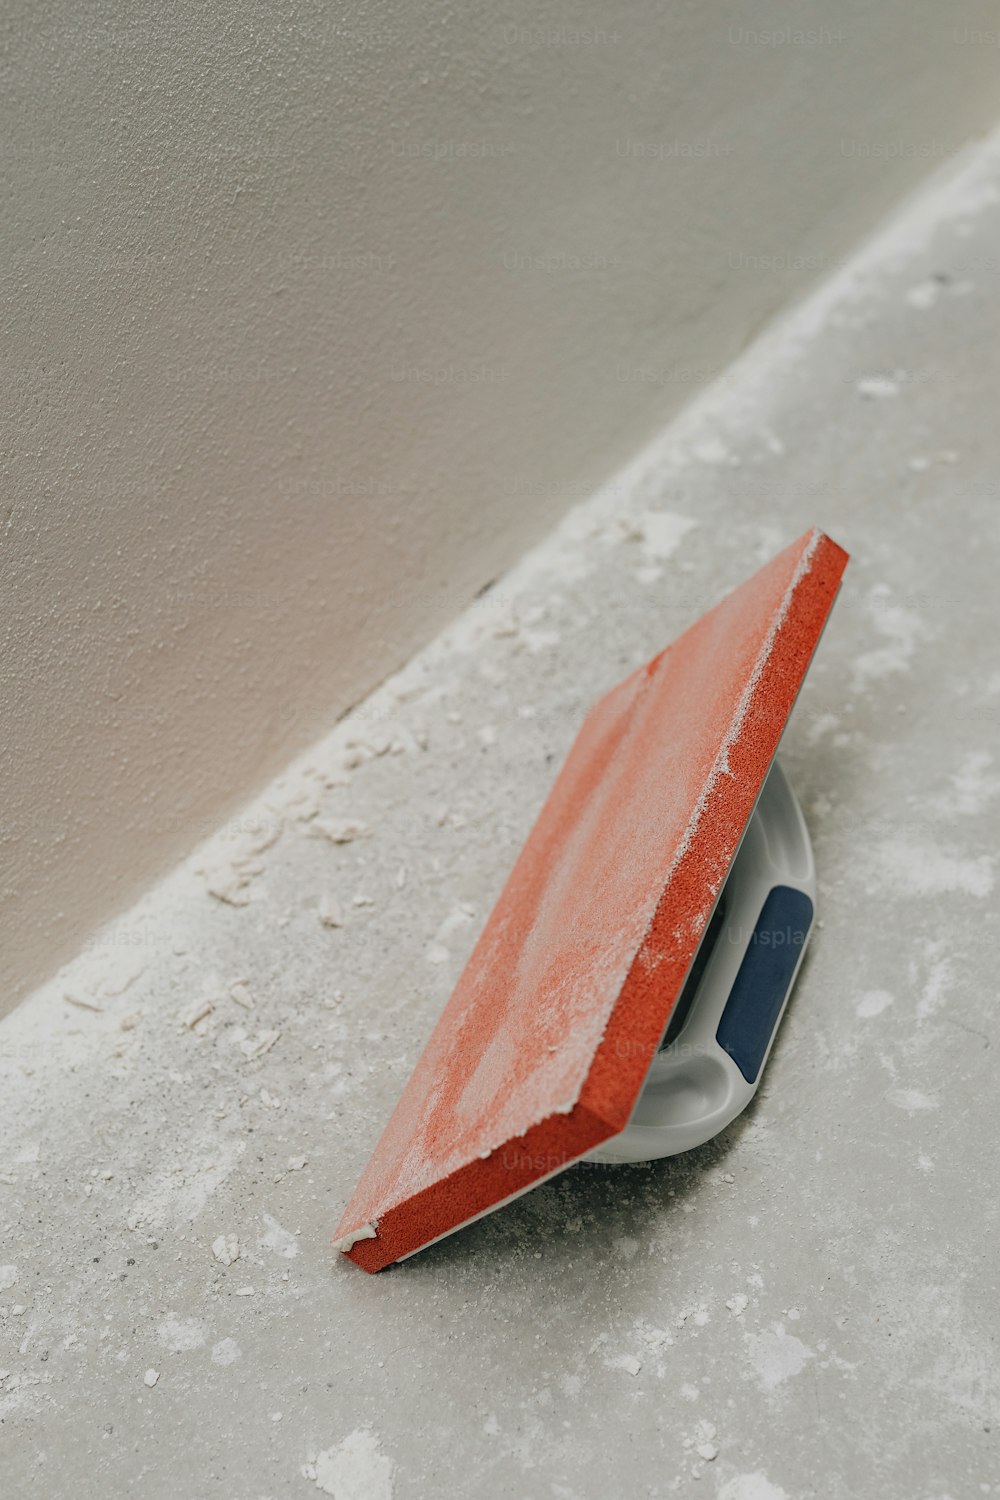 Un oggetto rosso e bianco seduto sopra un pavimento di cemento